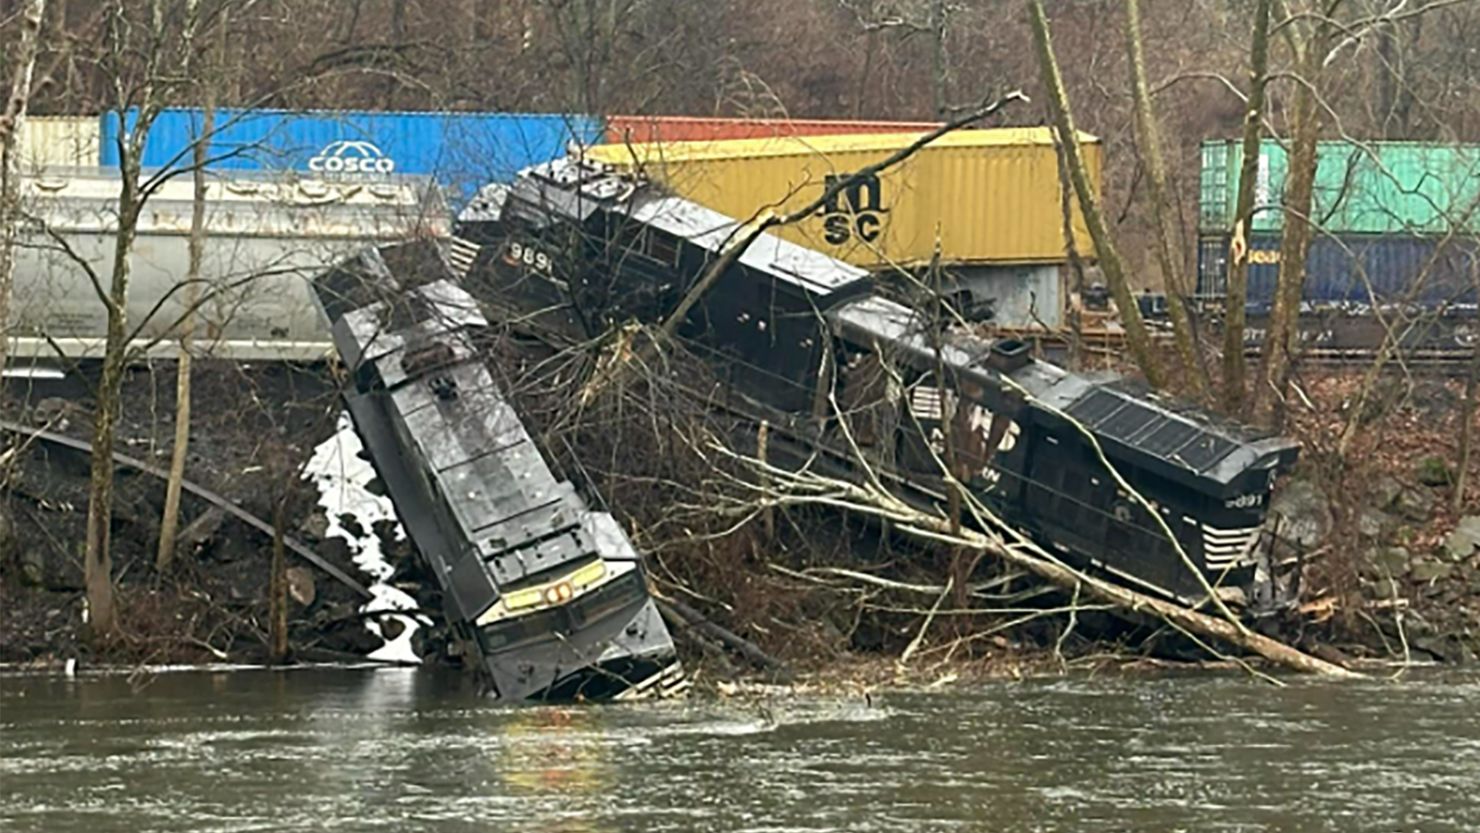 A freight train derailed 